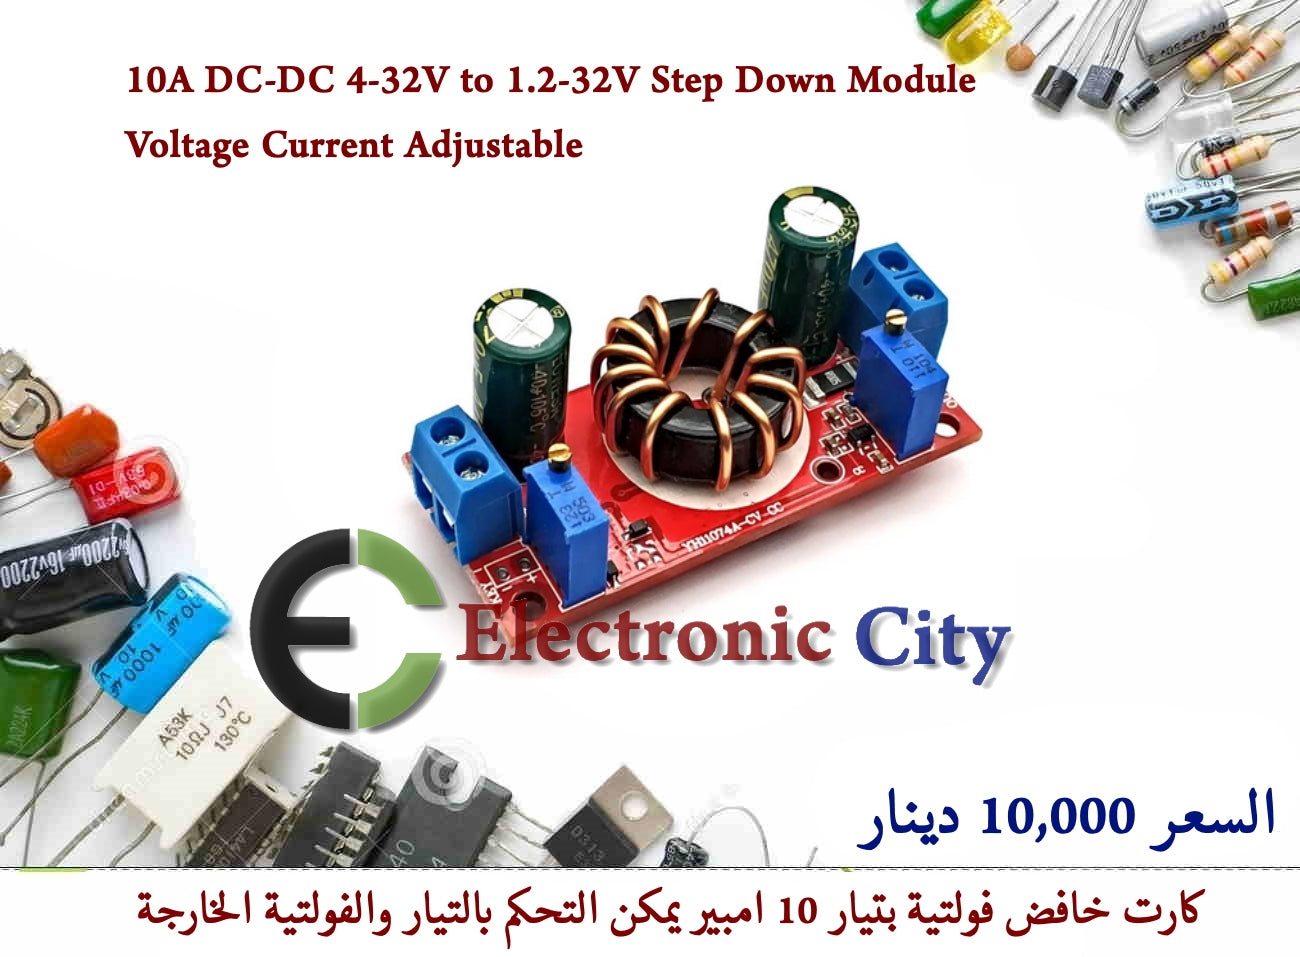 10A DC-DC 4-32V to 1.2-32V Step Down Module Voltage Current Adjustable